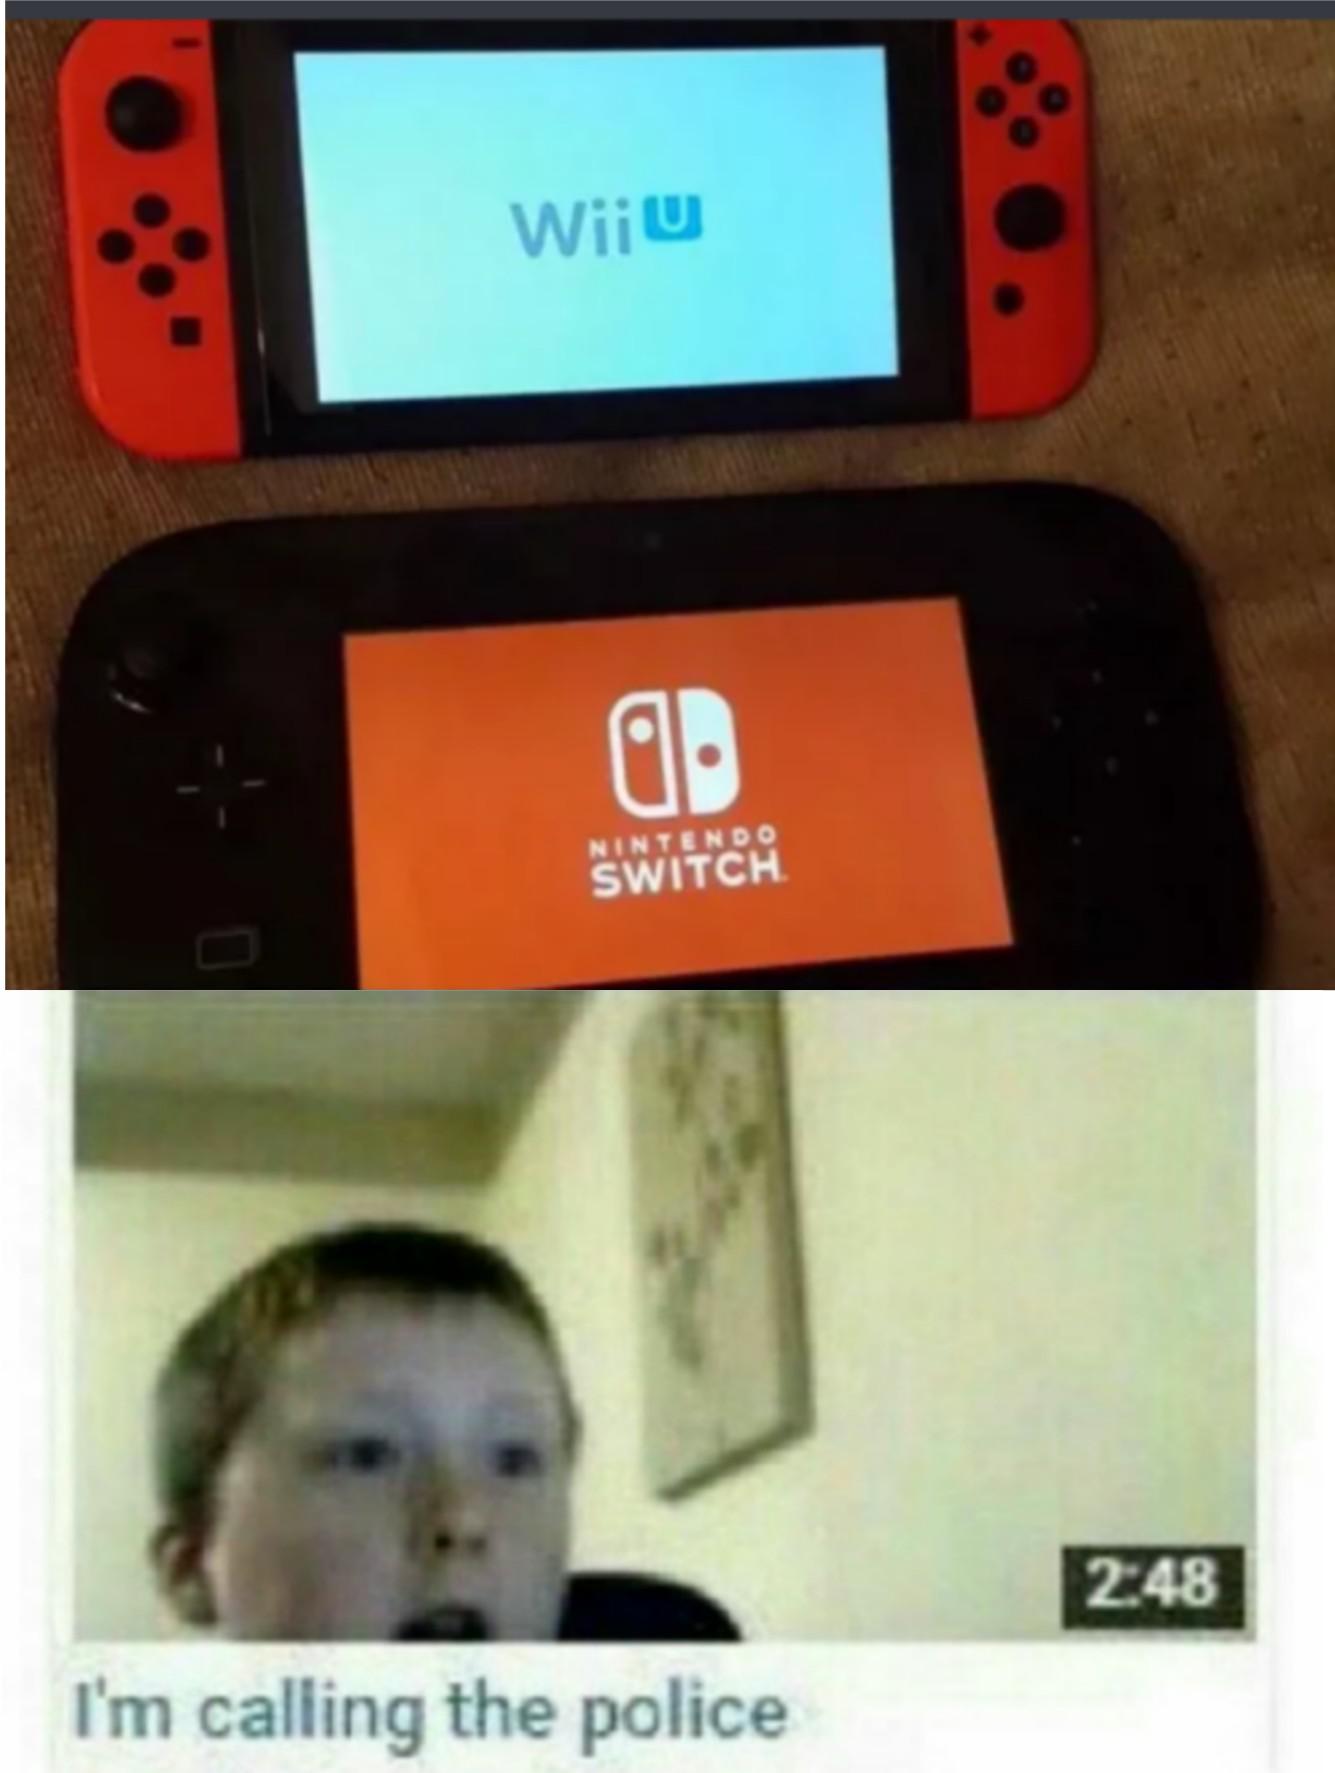 wii u nintendo switch meme - Wii U Nintendo Switch I'm calling the police